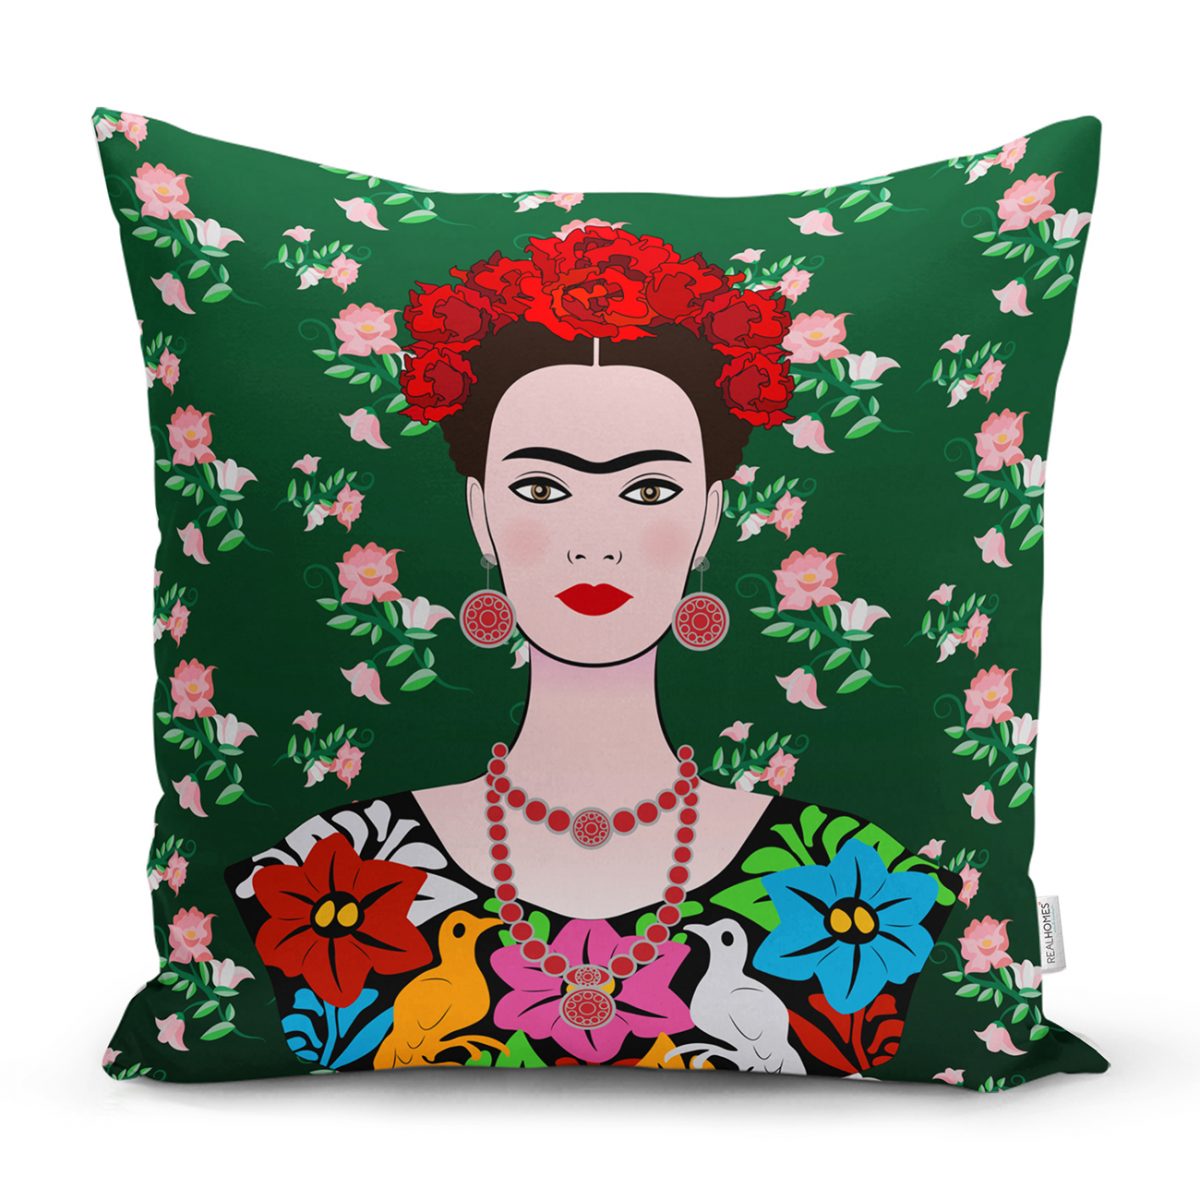 Yeşil Zeminde Frida Kahlo Motifli Özel Tasarım Yastık Kılıfı Realhomes